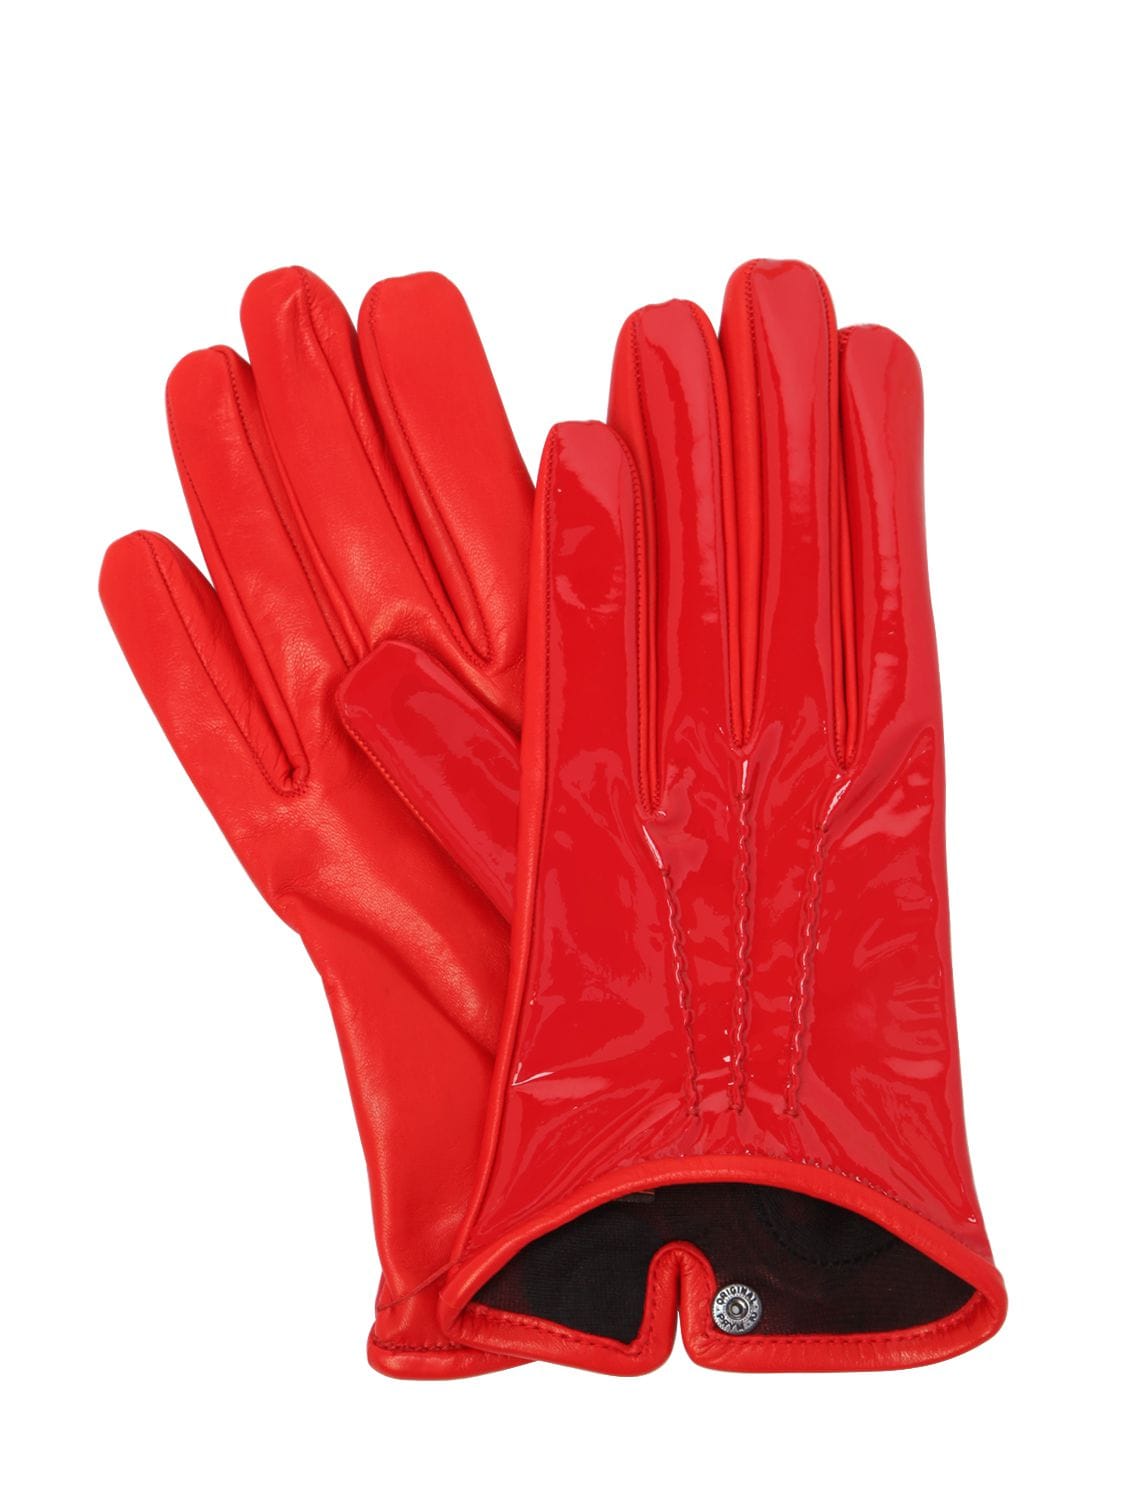 Mario Portolano Patent & Nappa Leather Gloves In Red